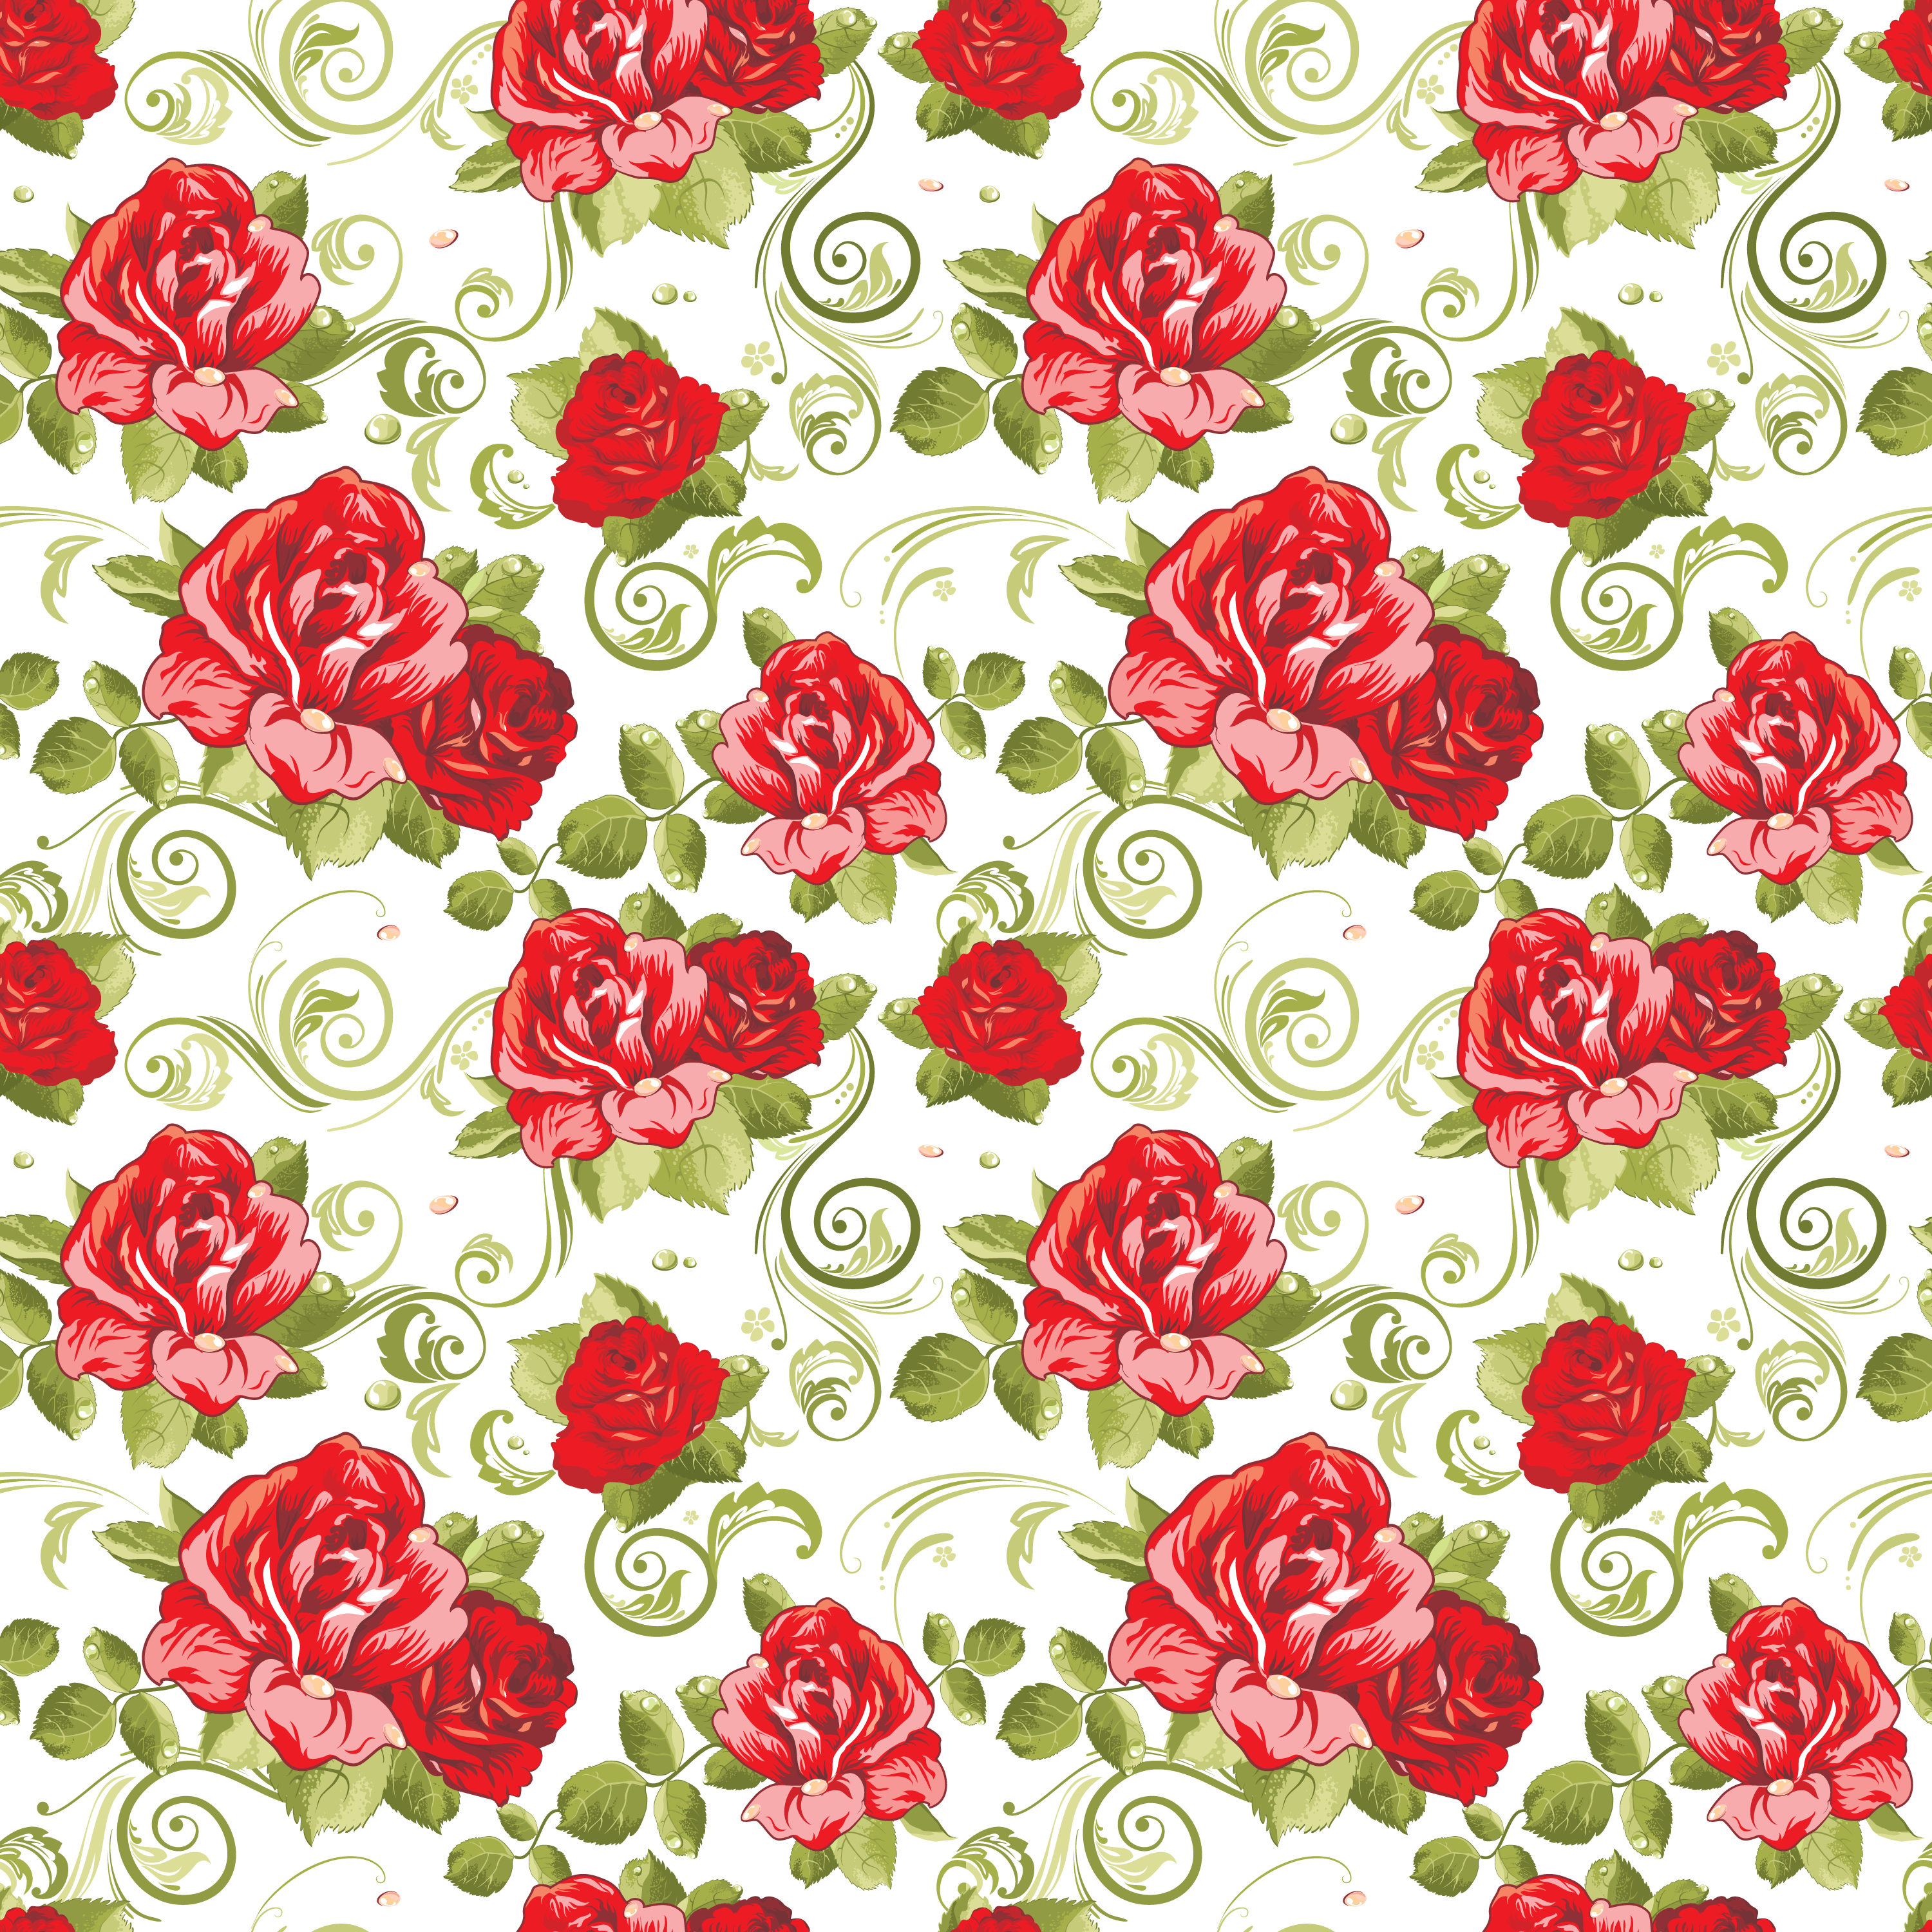 壁紙 背景イラスト 花の模様 柄 パターン No 224 赤バラ 緑葉 つる